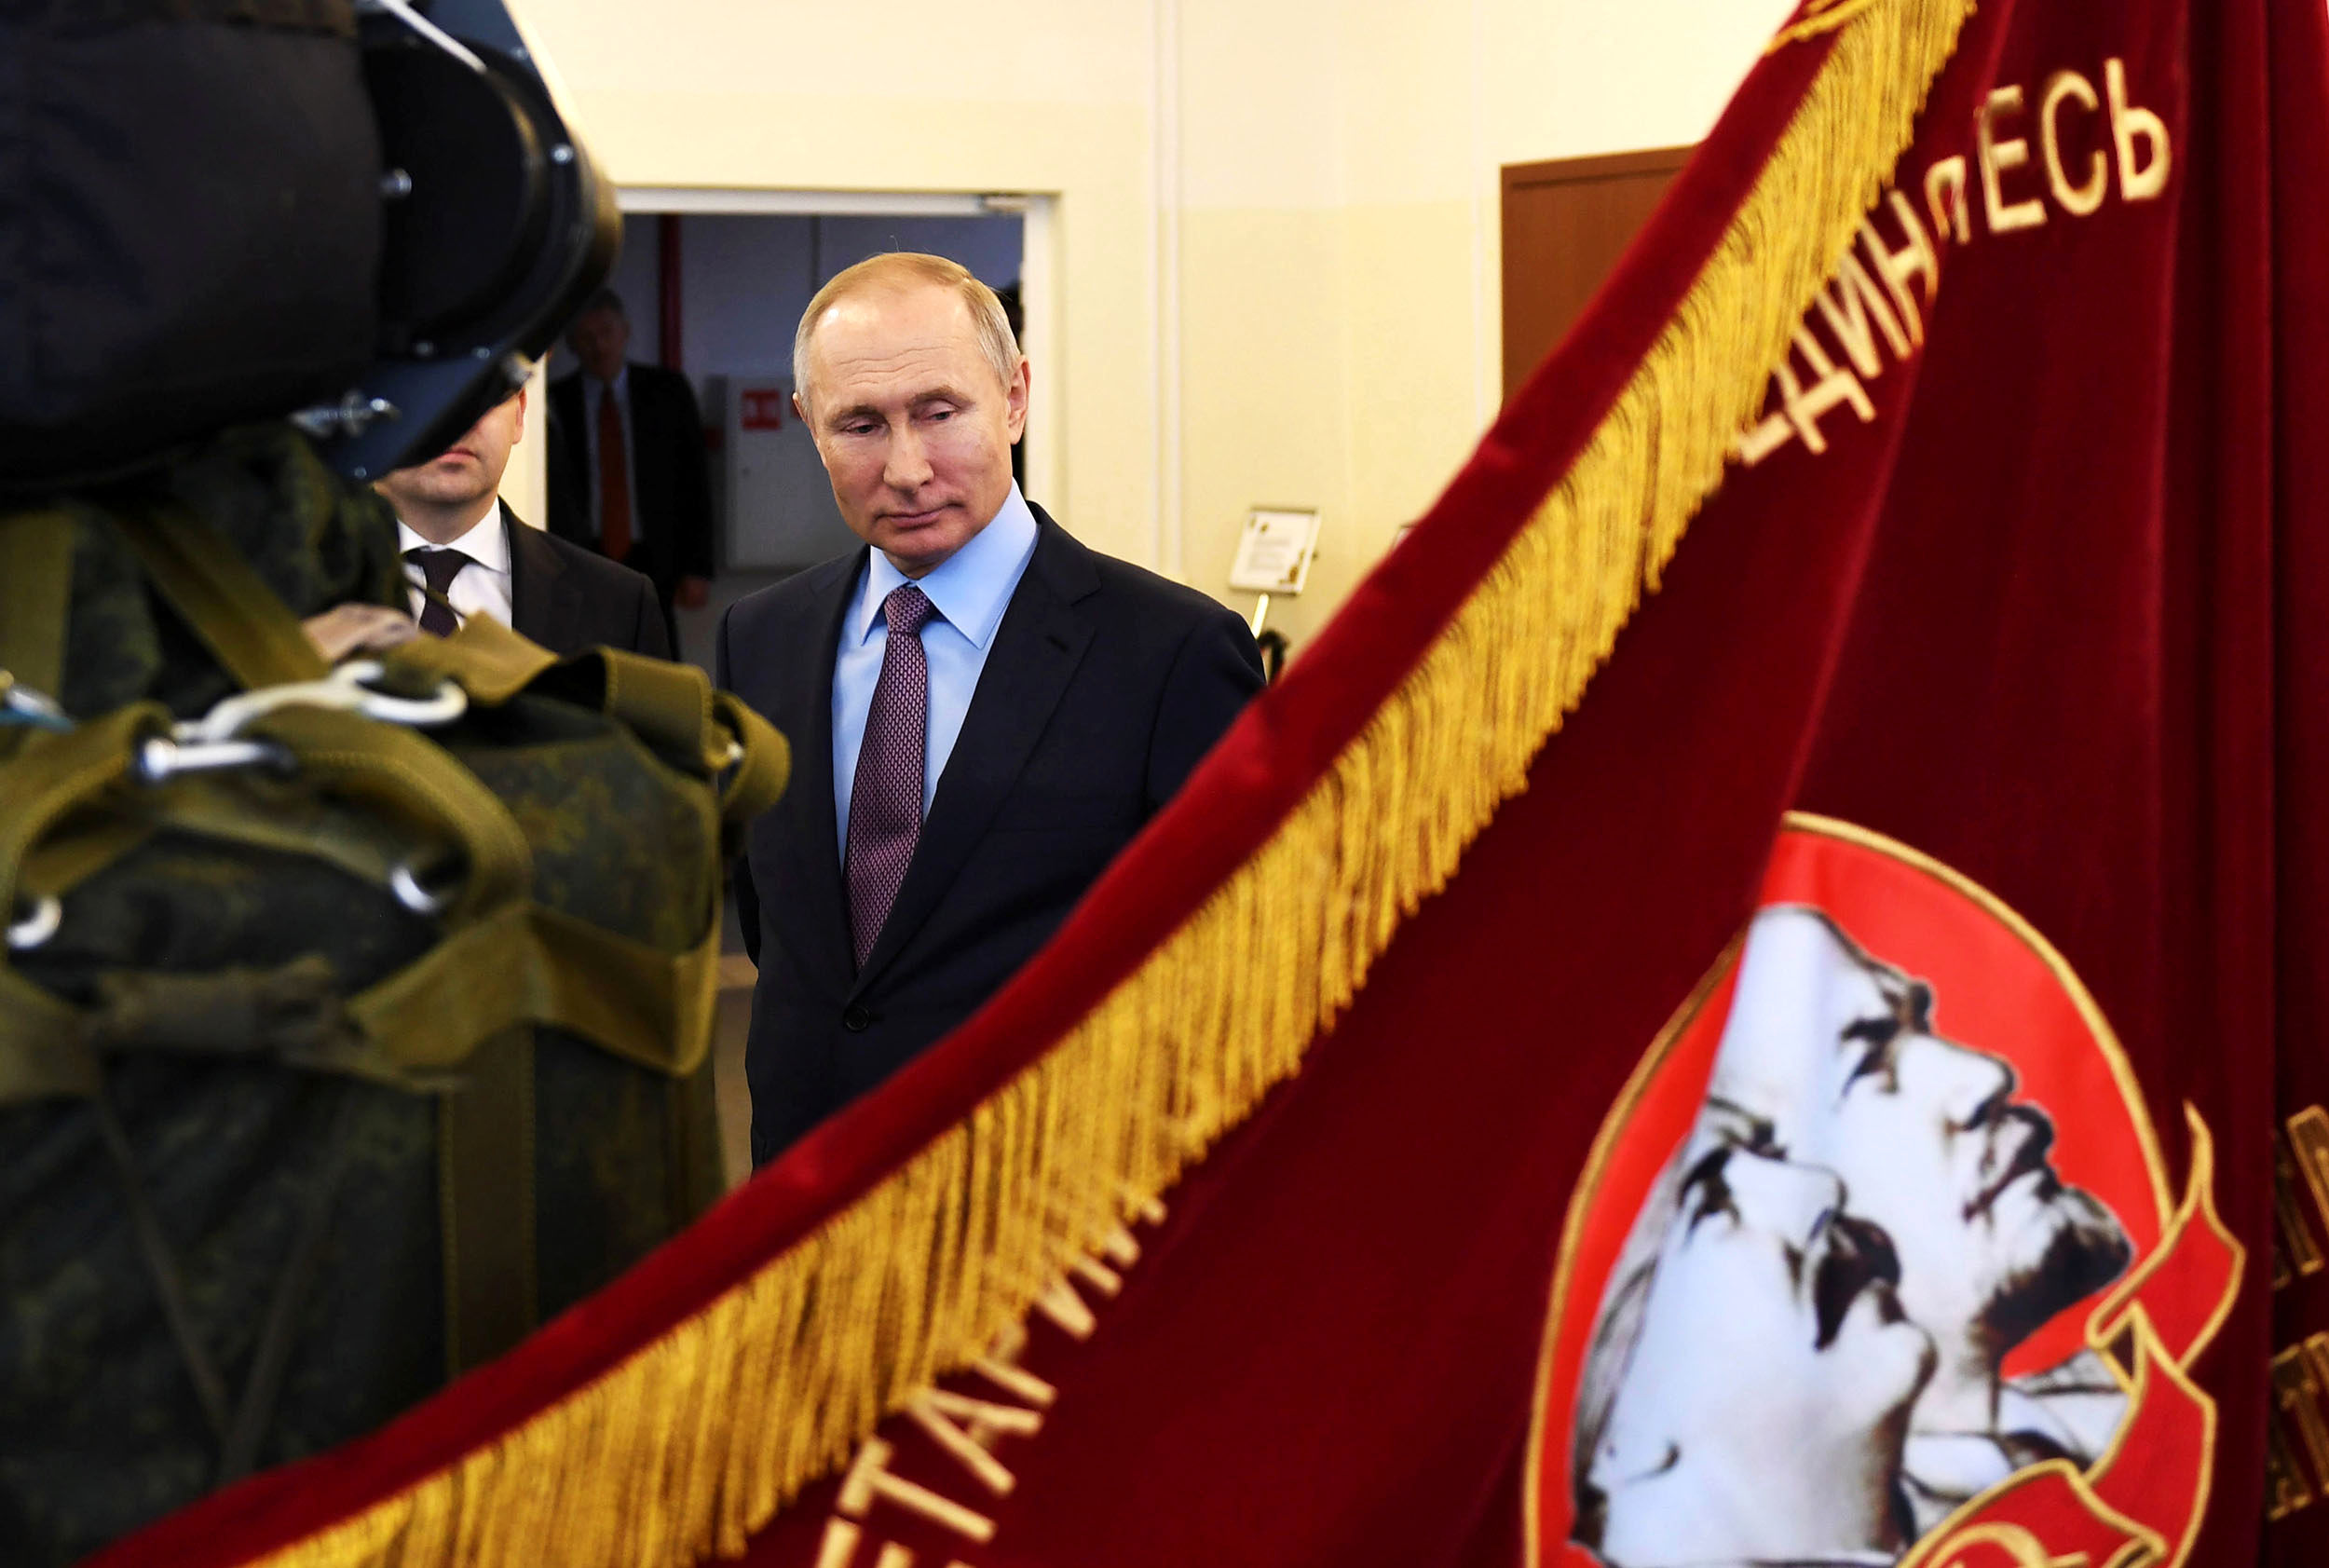 ردای امپراتوری سرخ بر قامت پوتین/توسل به تهدیدی خیالی برای بقا